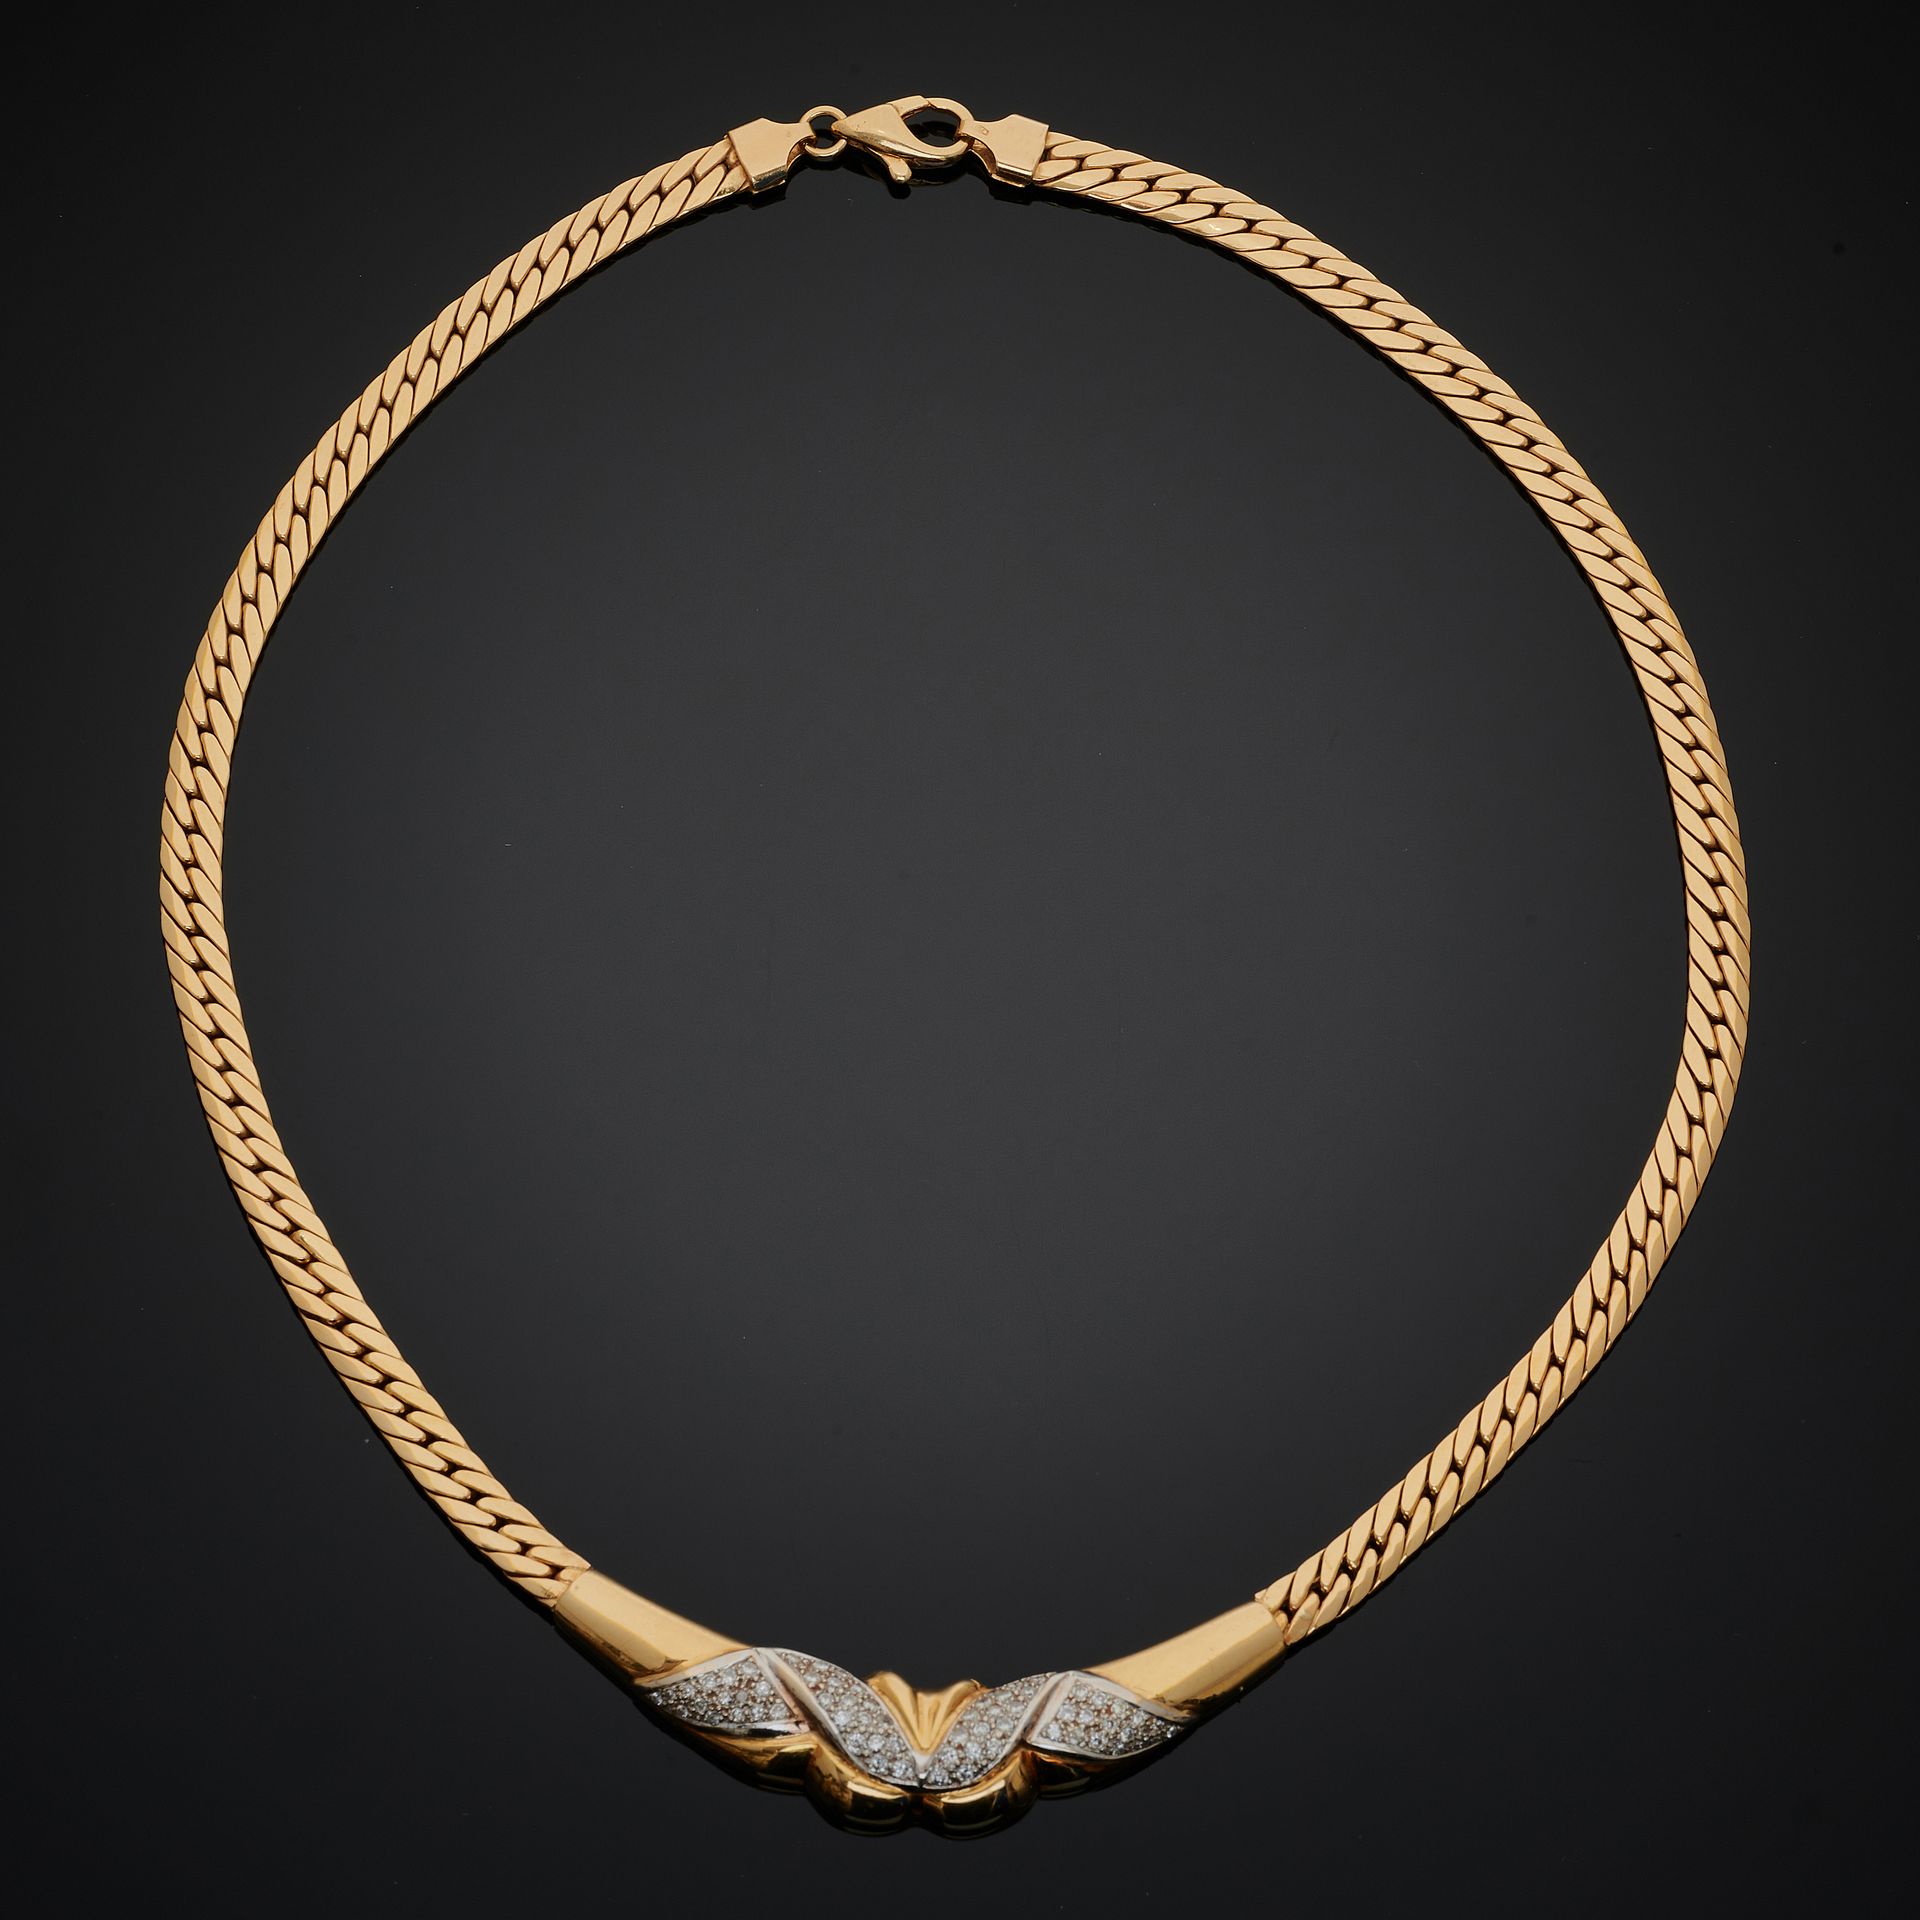 Null 双色金项链，平坦的卷边链，中心是密镶的明亮式切割钻石图案。
意大利80年代的作品。
毛重：29.7克